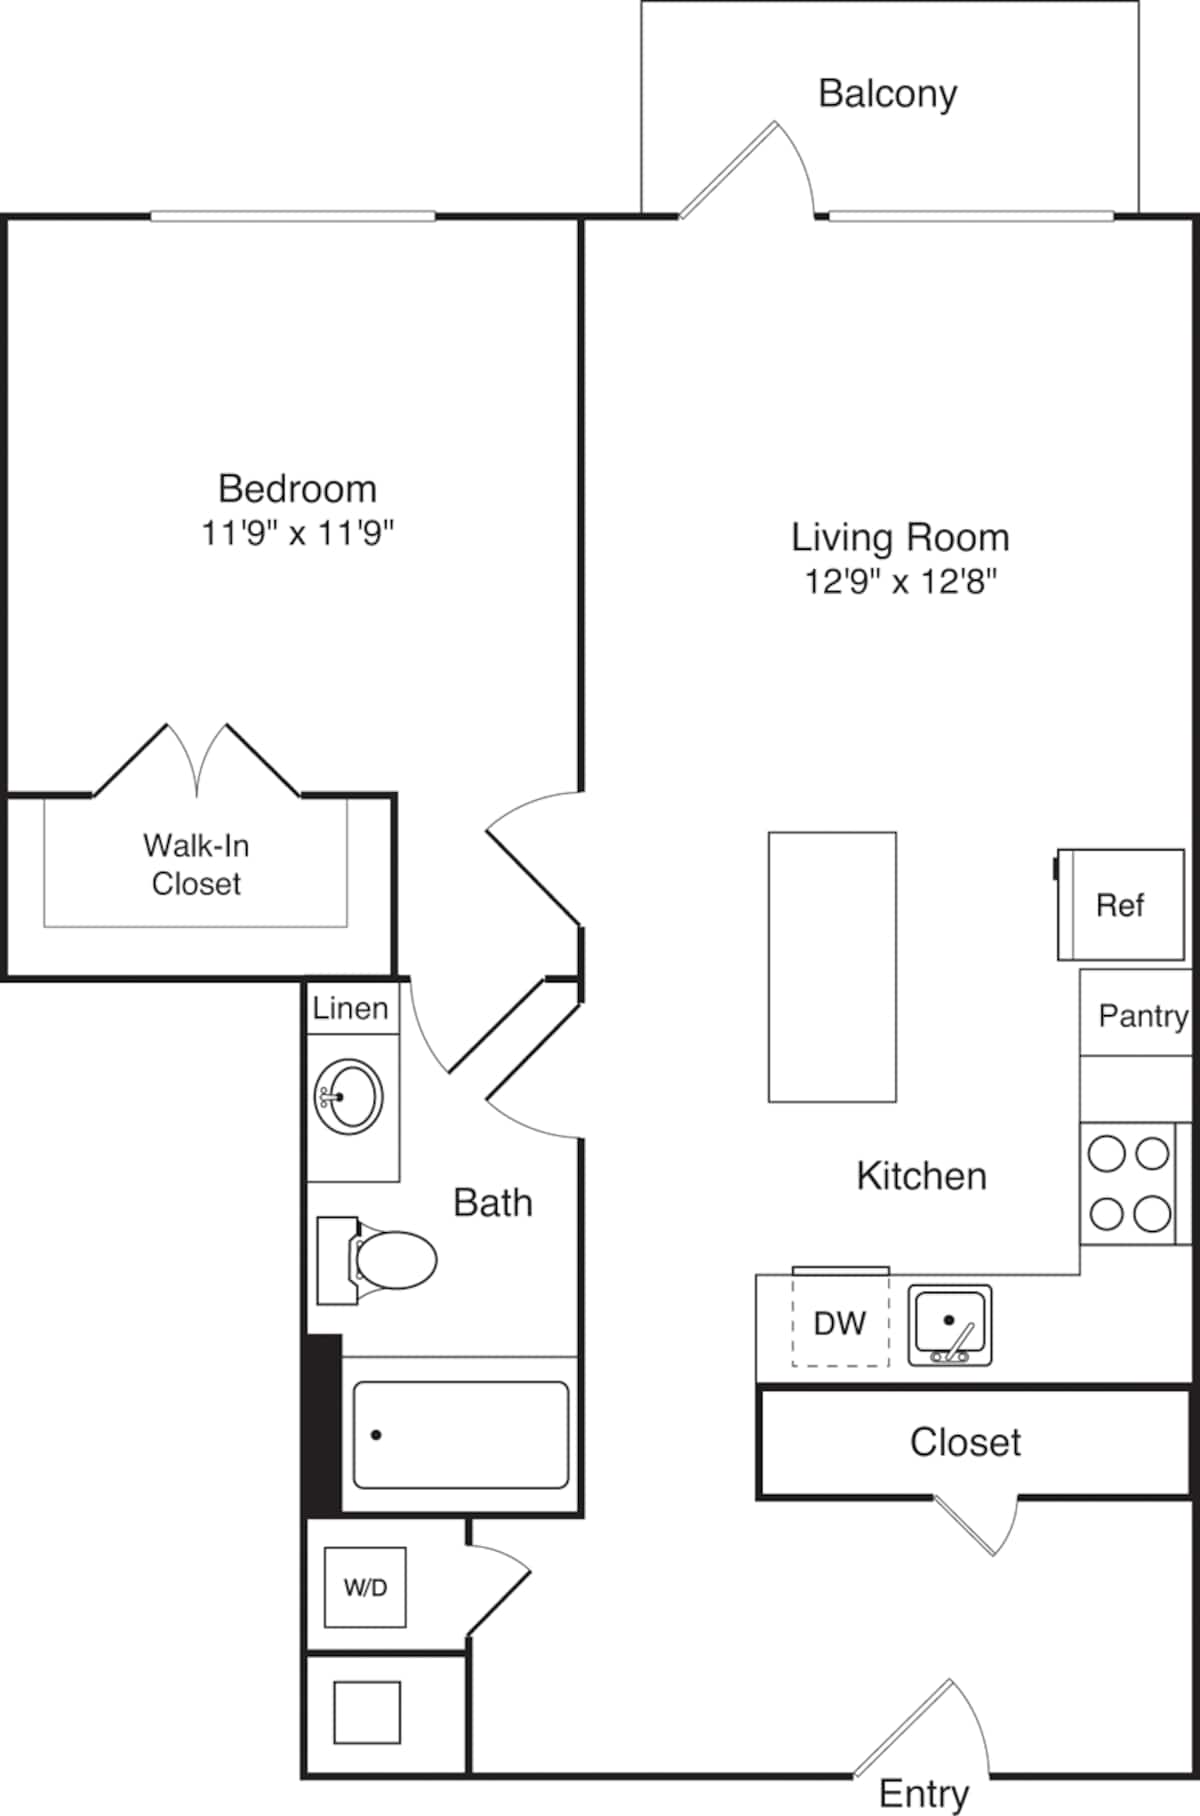 Floorplan diagram for A15 Alt, showing 1 bedroom